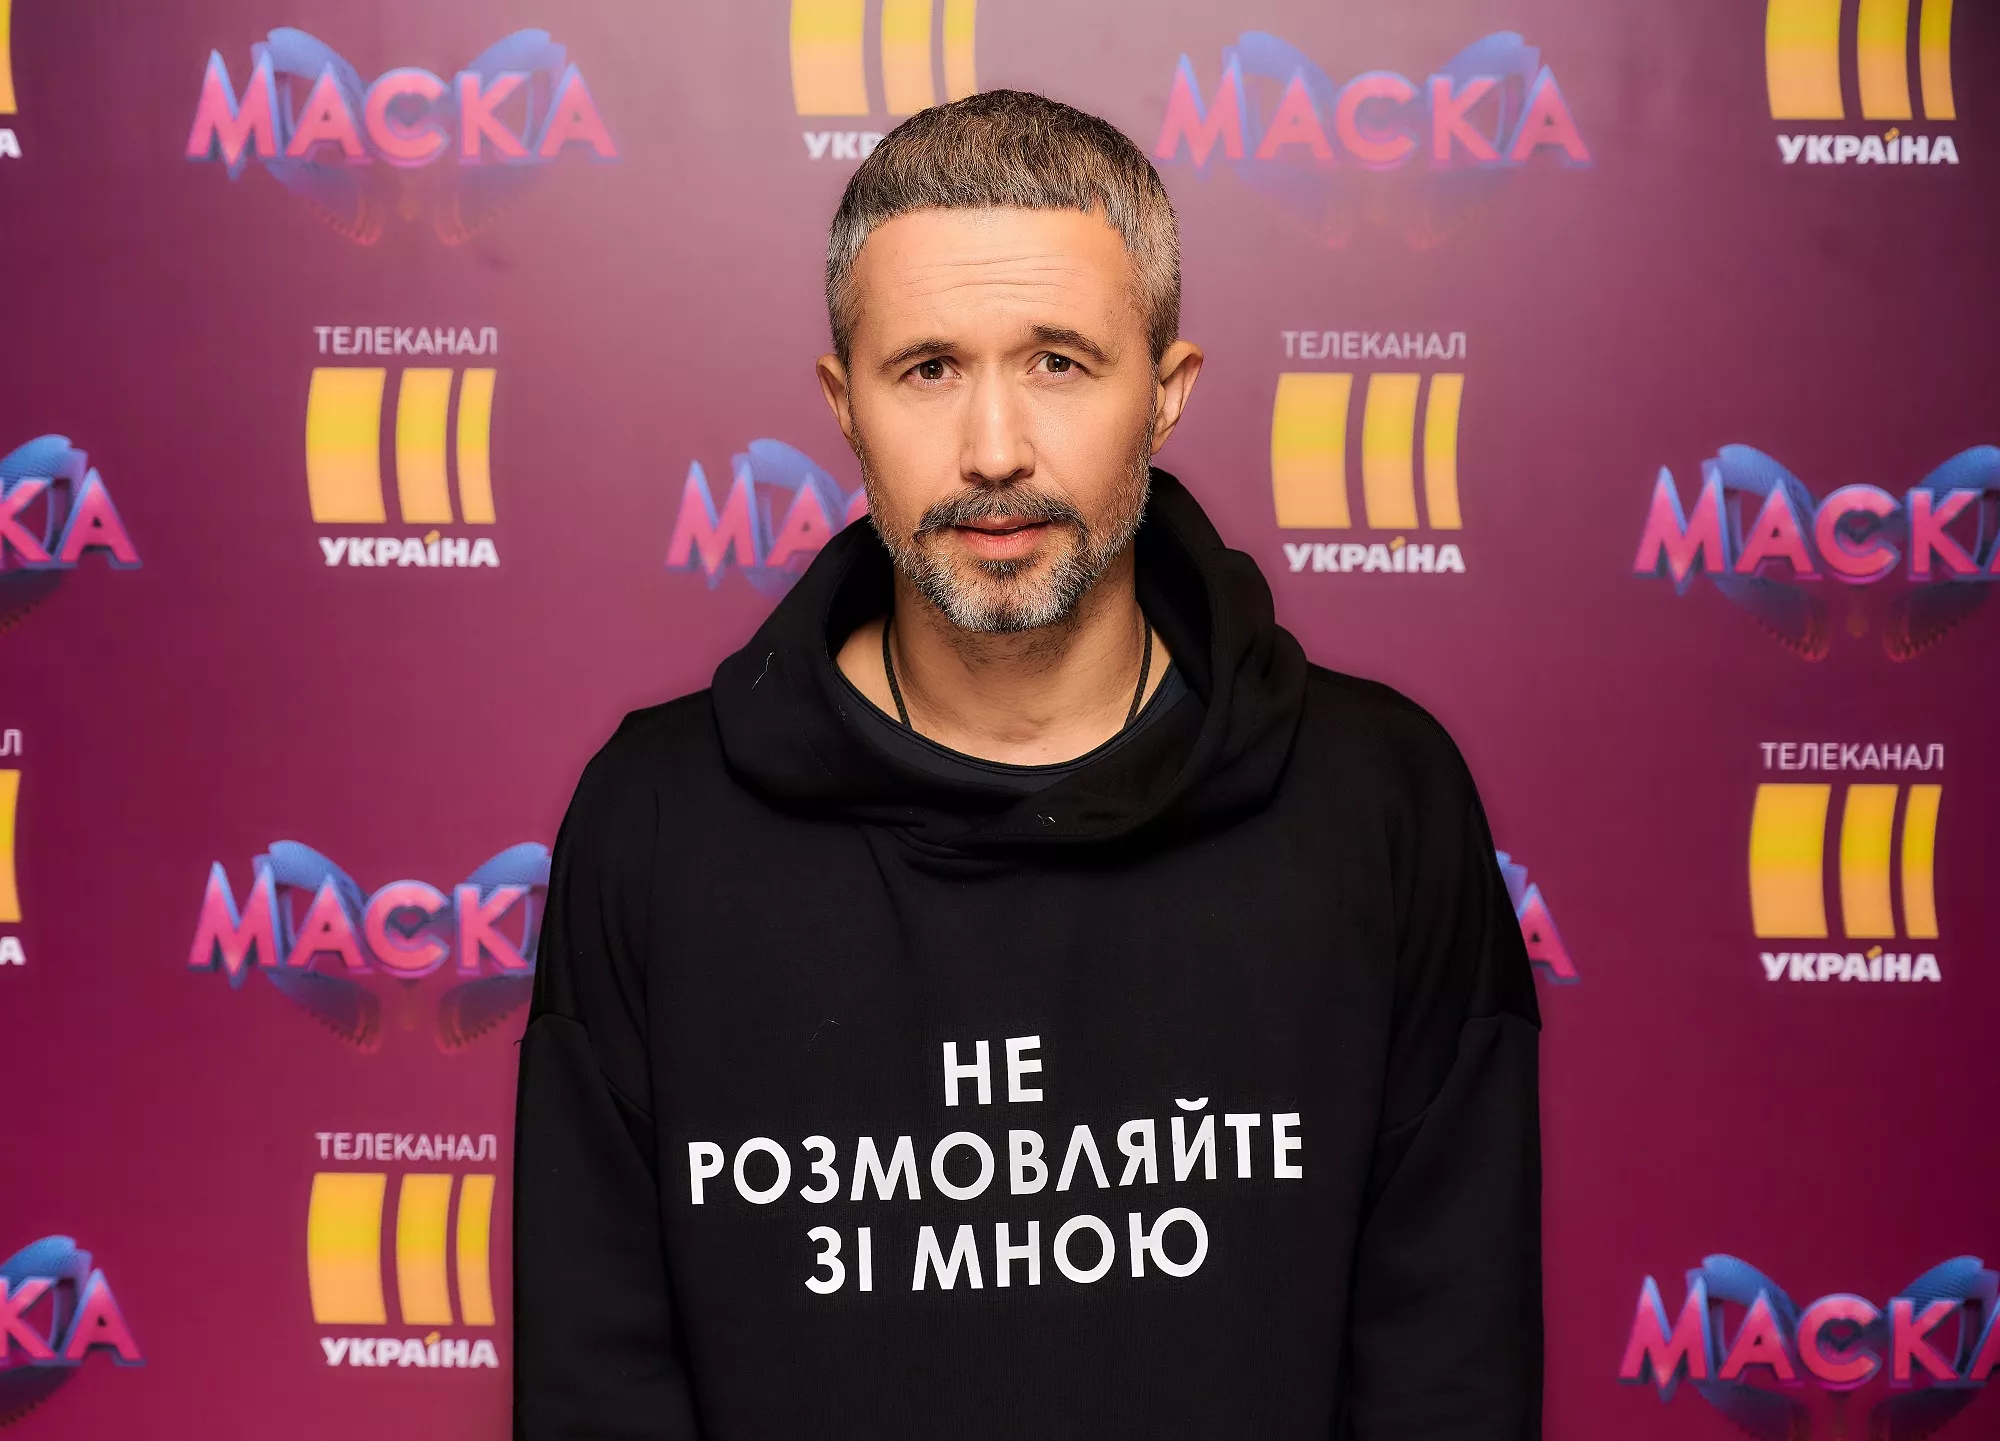 Сергій Бабкін у шоу "Маска"